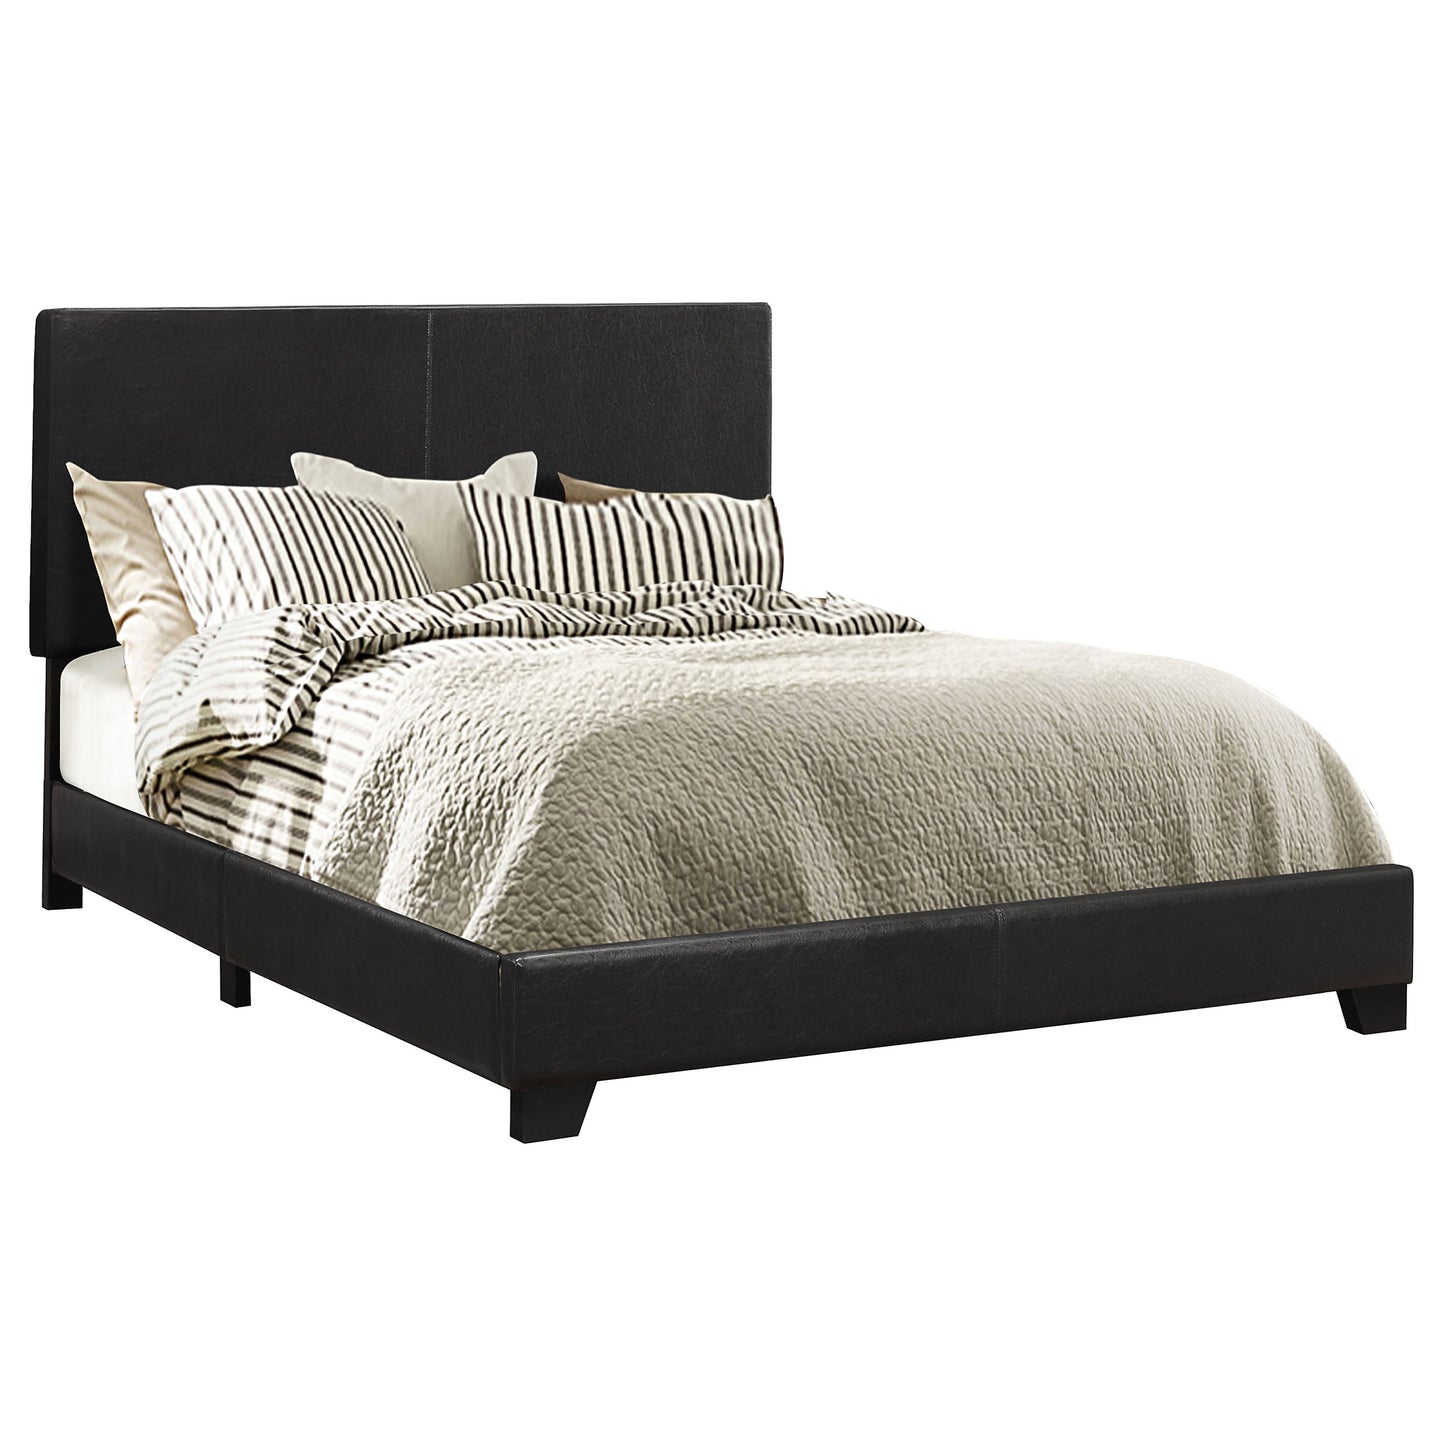 Dorian Upholstered Full Panel Bed Black